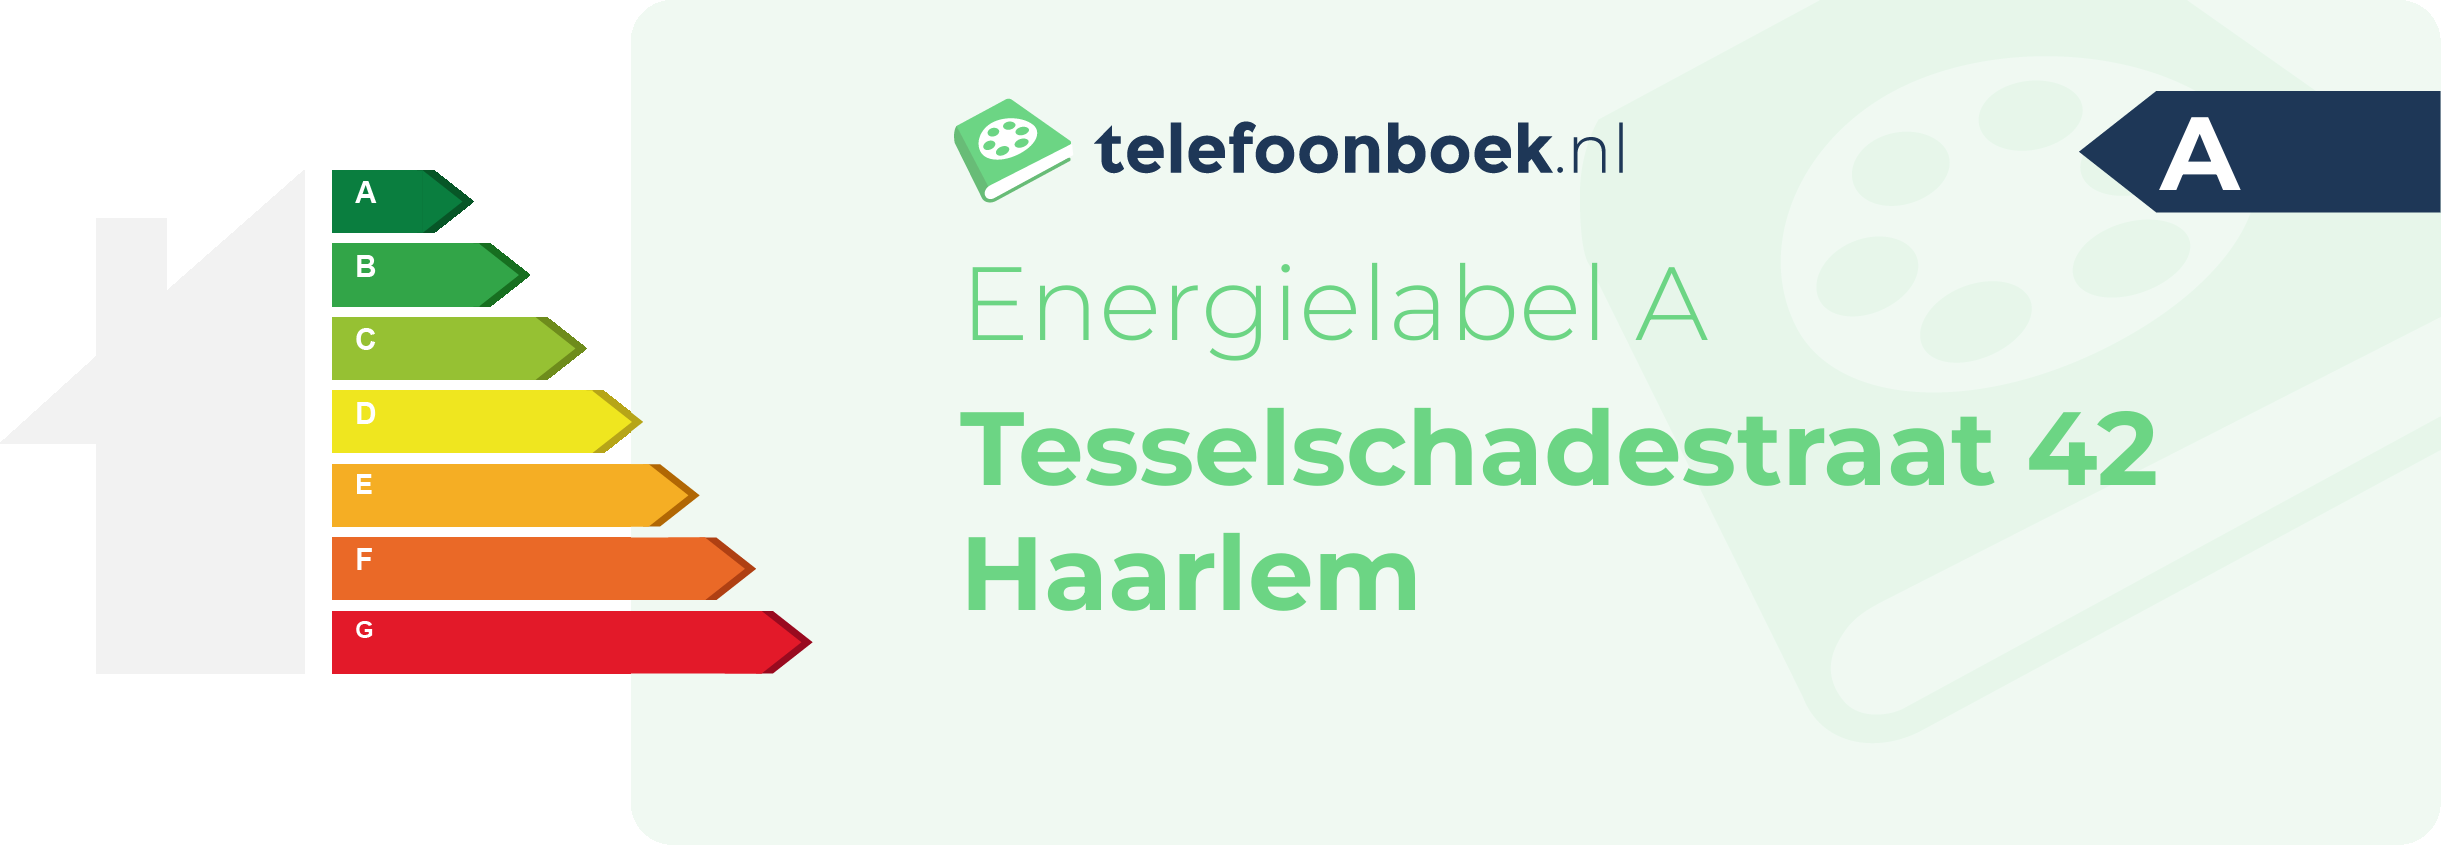 Energielabel Tesselschadestraat 42 Haarlem